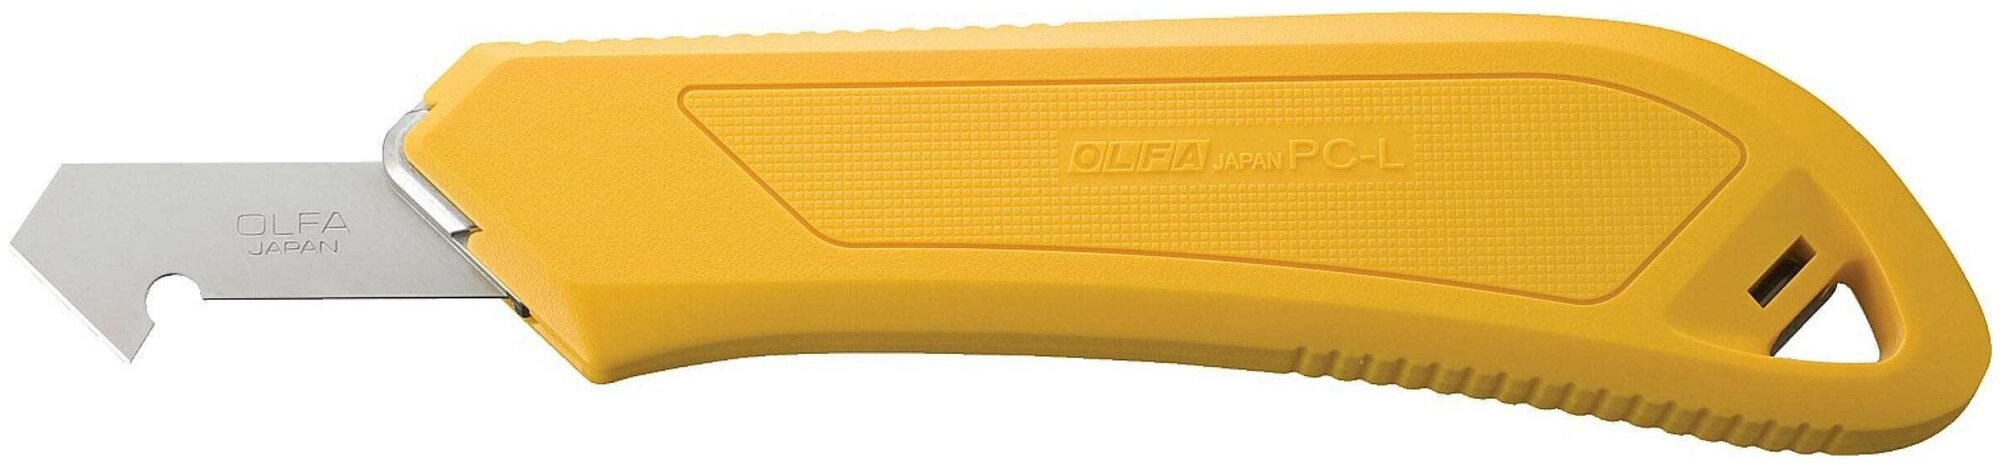 OLFA Набор OLFA Резак для пластика усиленный с 3-мя лезвиями PC-L 13мм